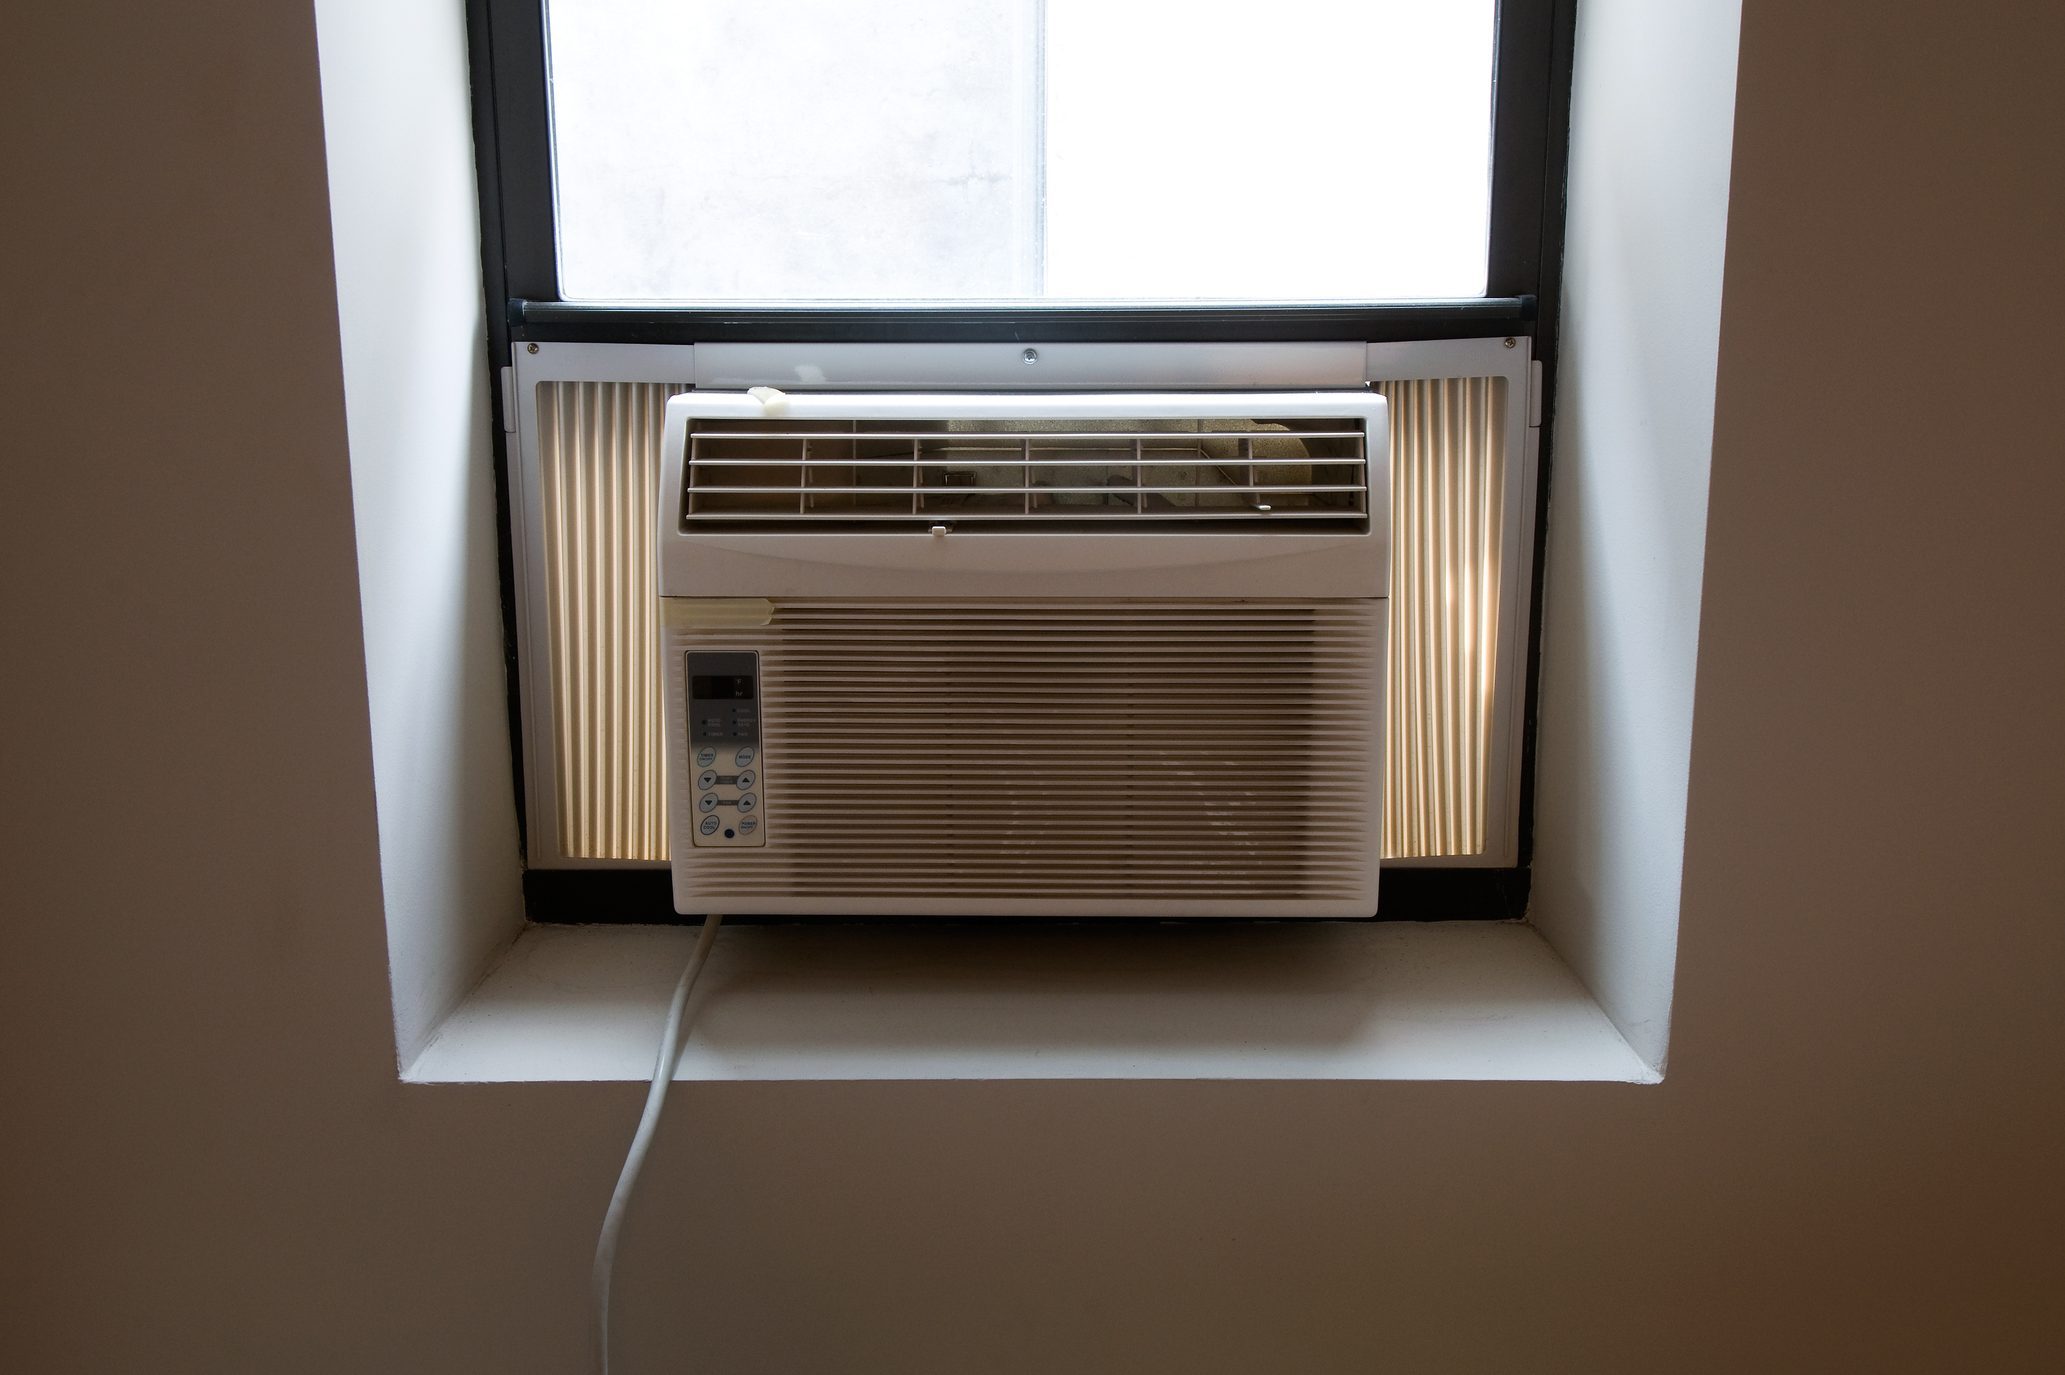 Air conditioner unit in window